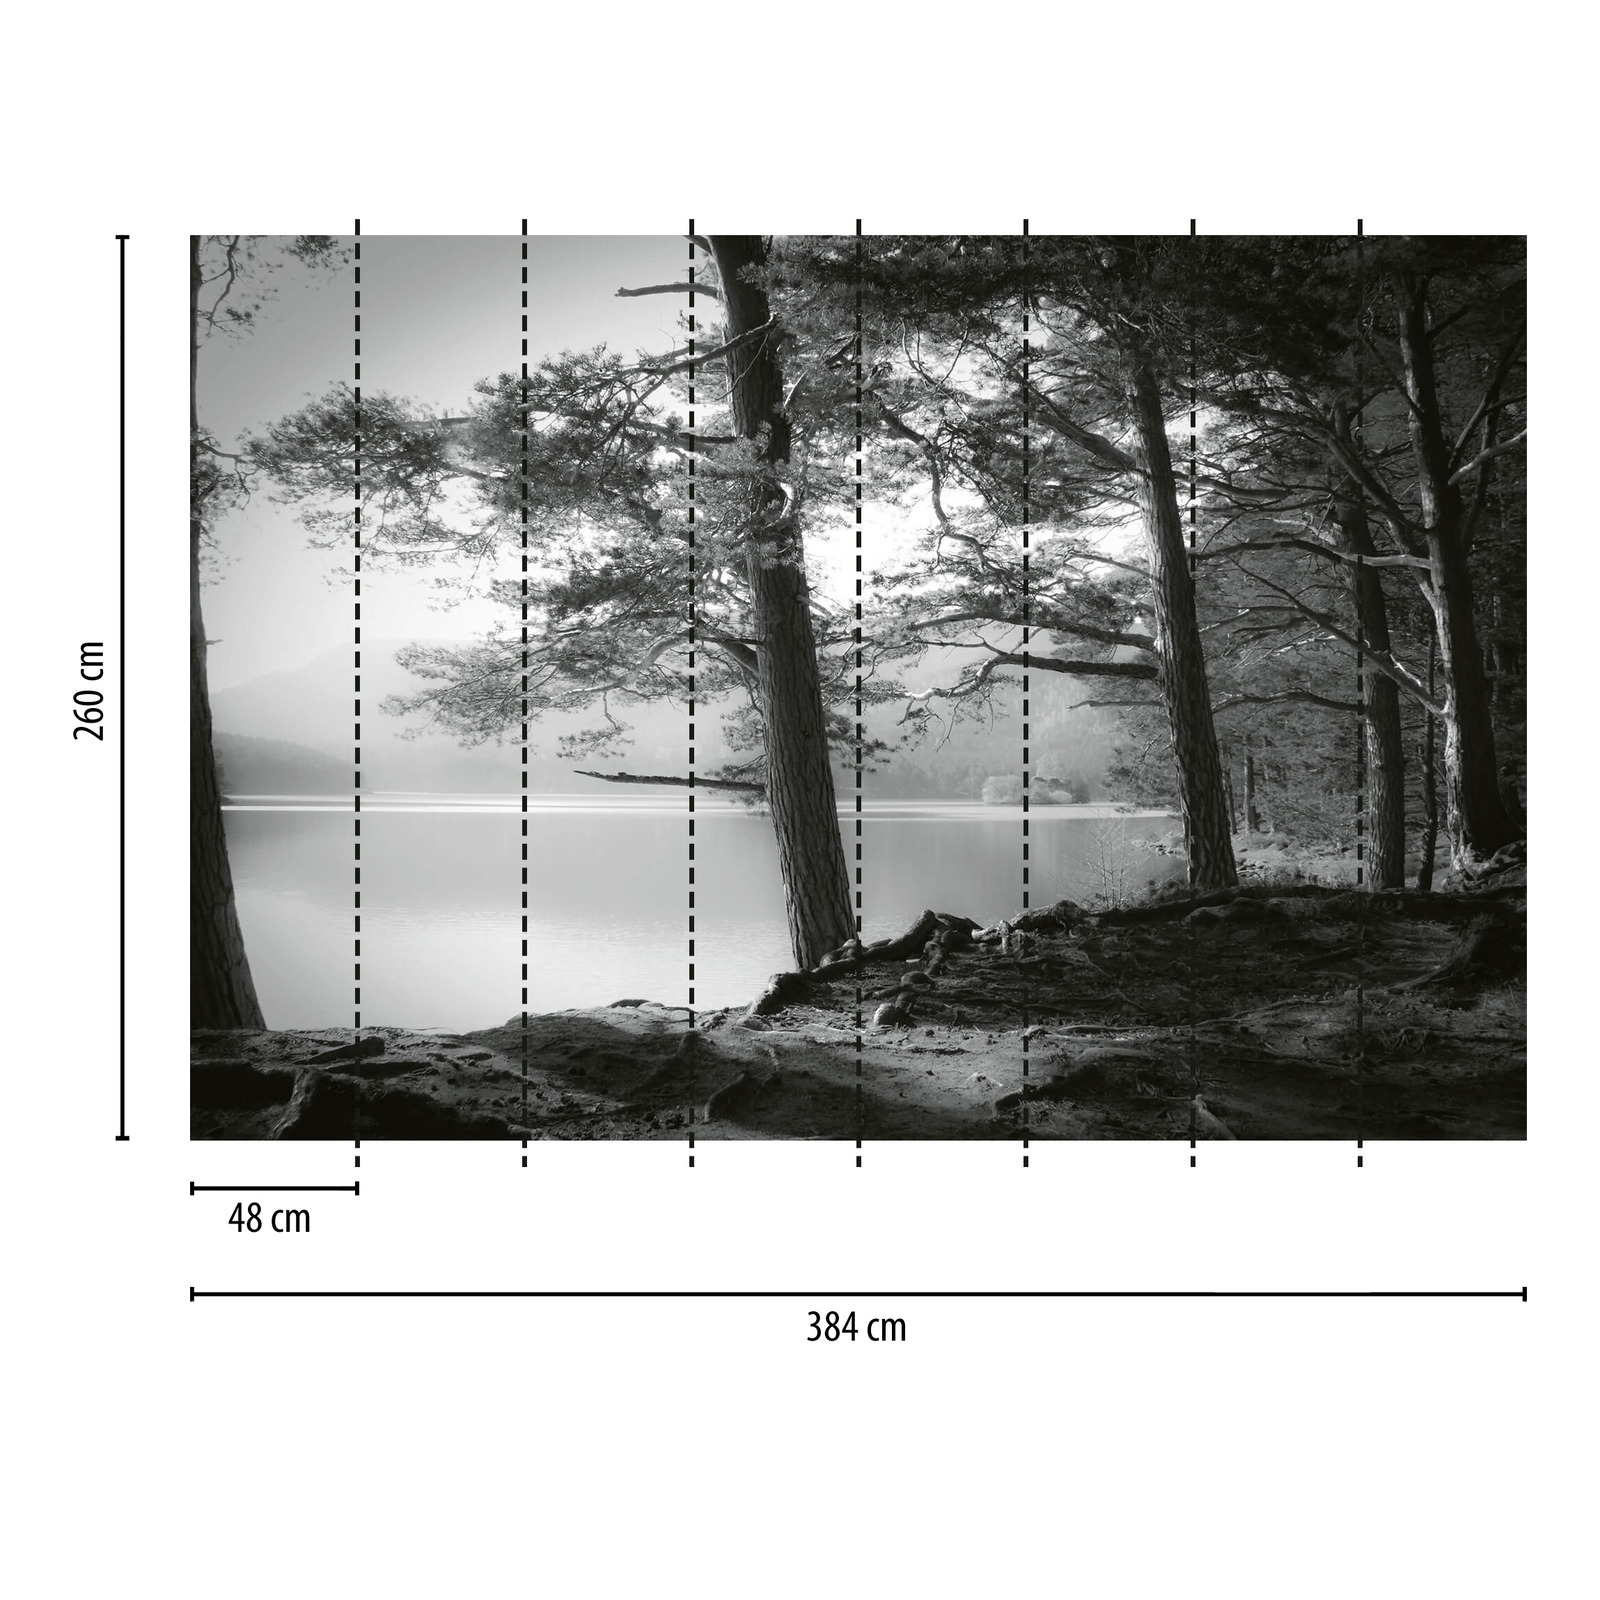             Fototapete Wald mit See – Schwarz, Weiß, Grau
        